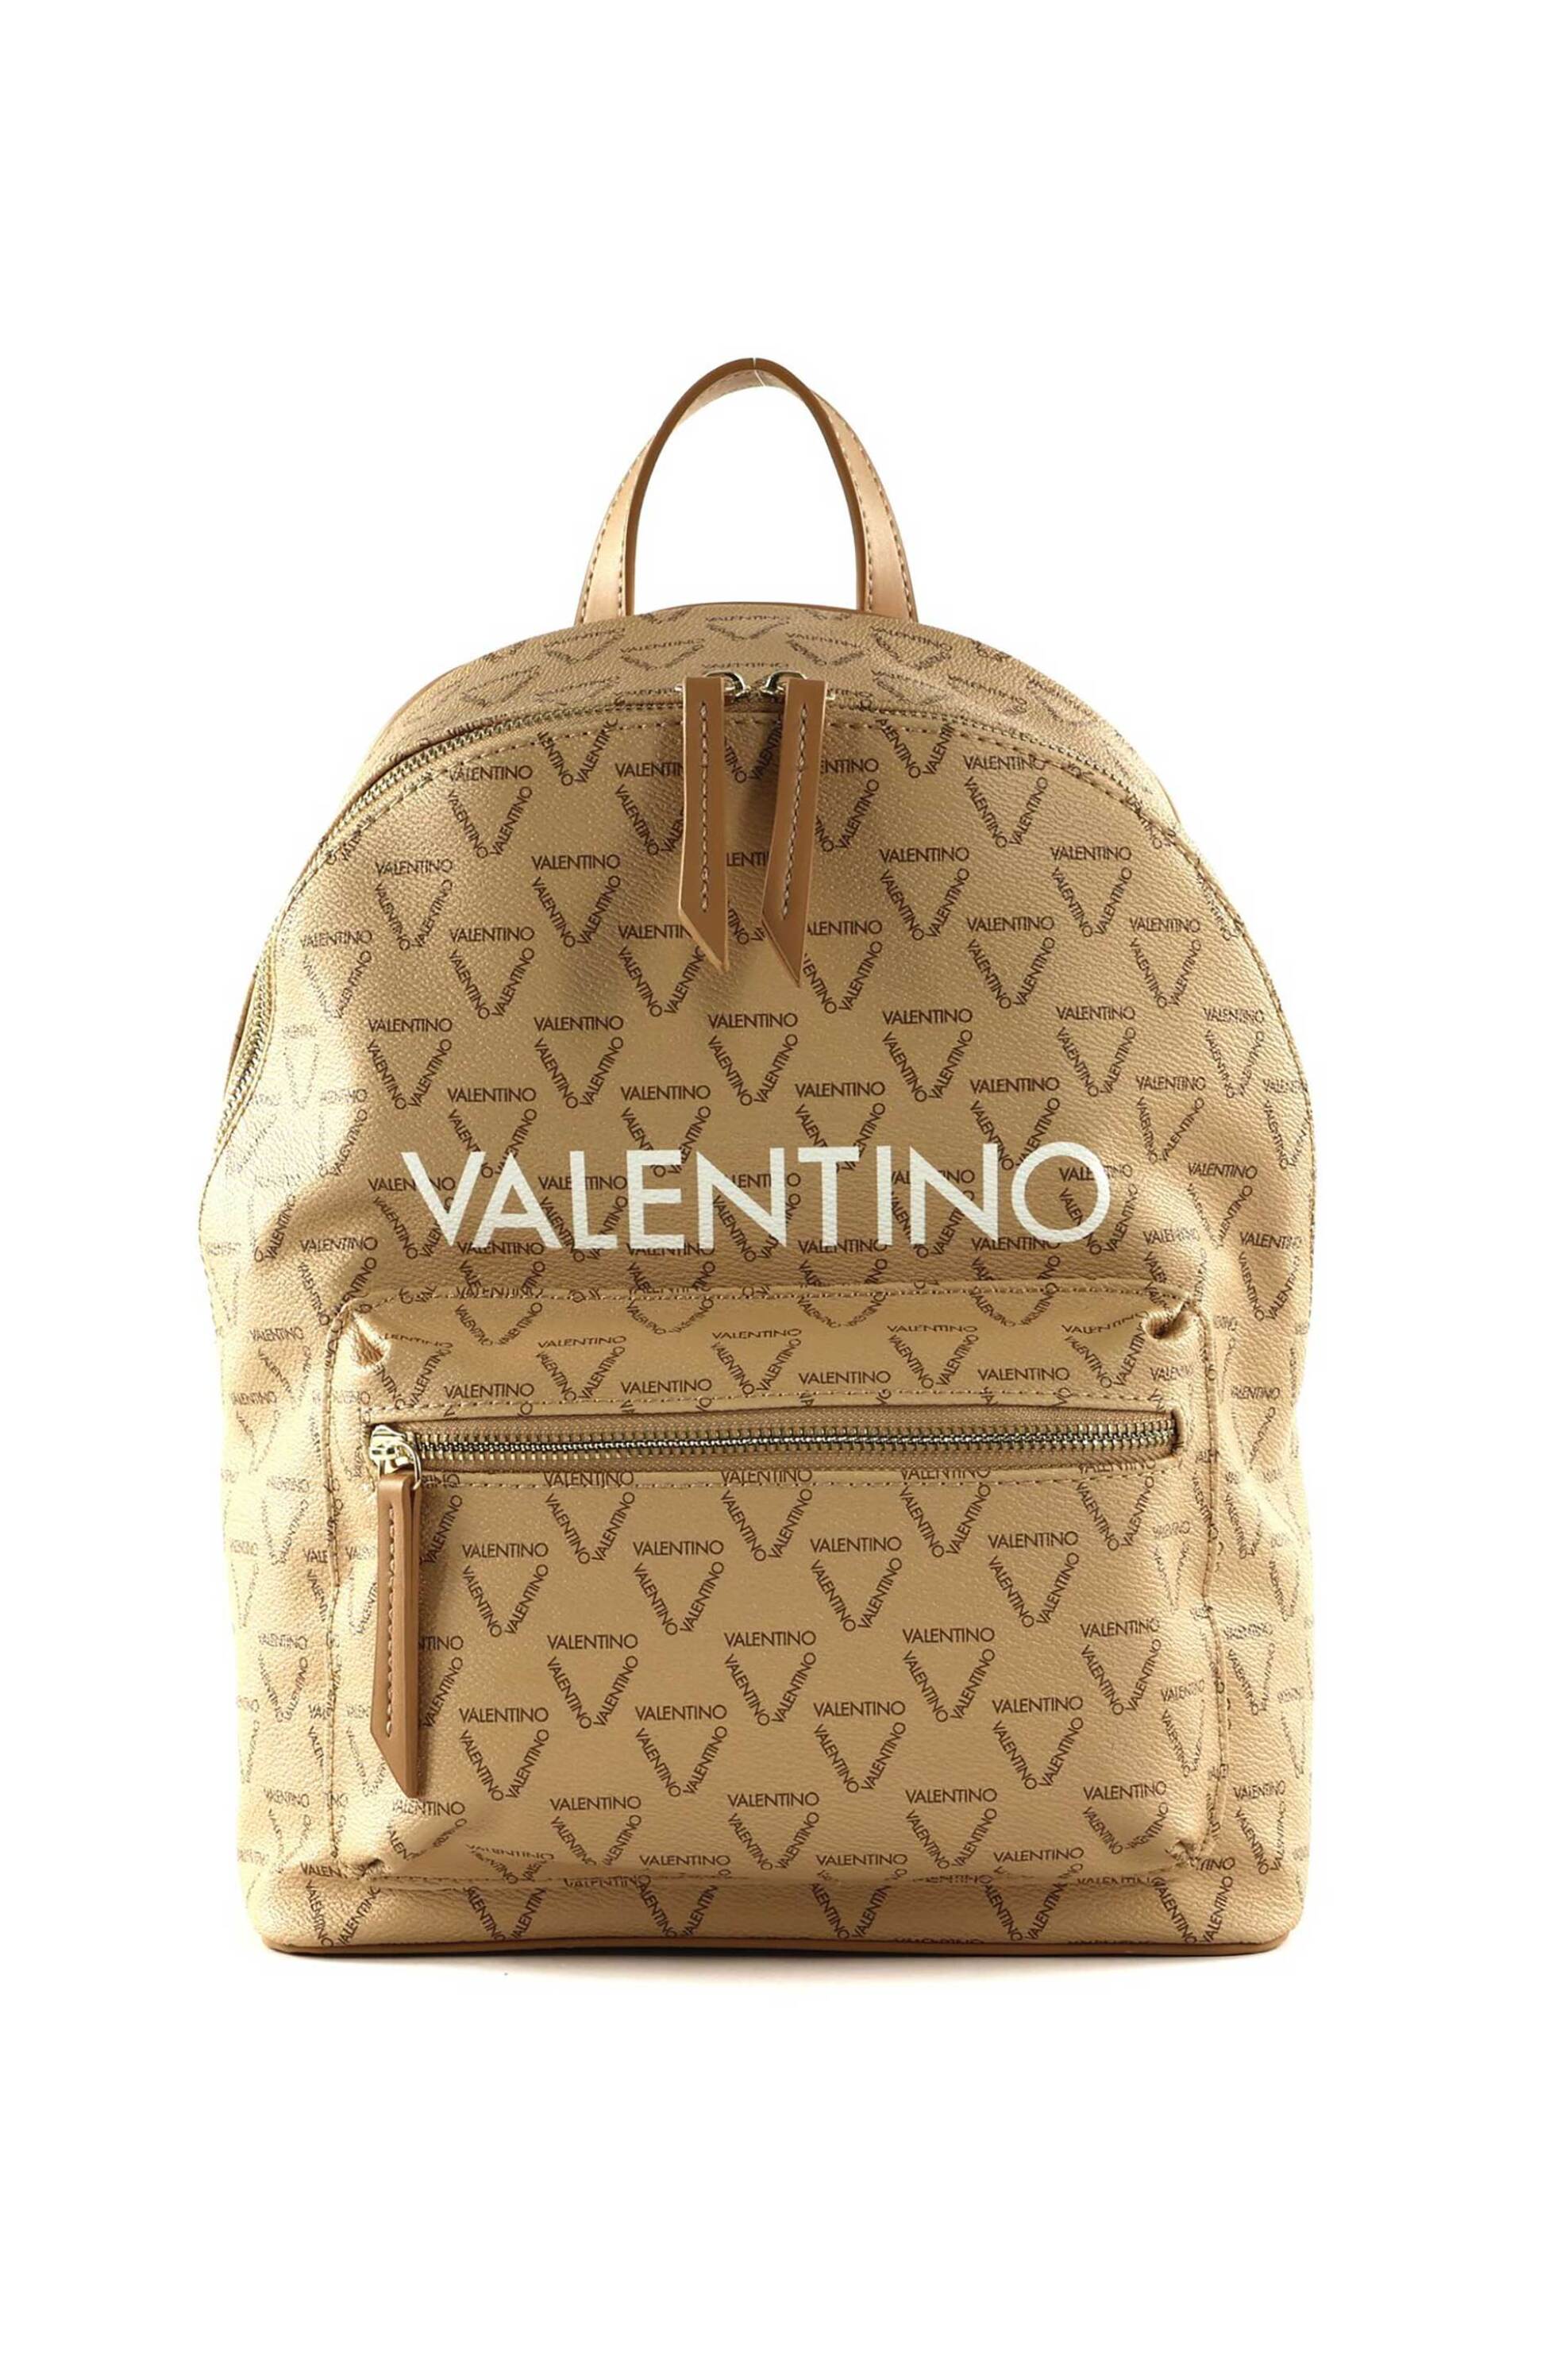 Γυναικεία Ρούχα & Αξεσουάρ > Γυναικείες Τσάντες > Γυναικεία Σακίδια & Backpacks Valentino γυναικείο backpack με all-over triangular logo print "Liuto" - 55KVBS3KG16R/LI Μπεζ